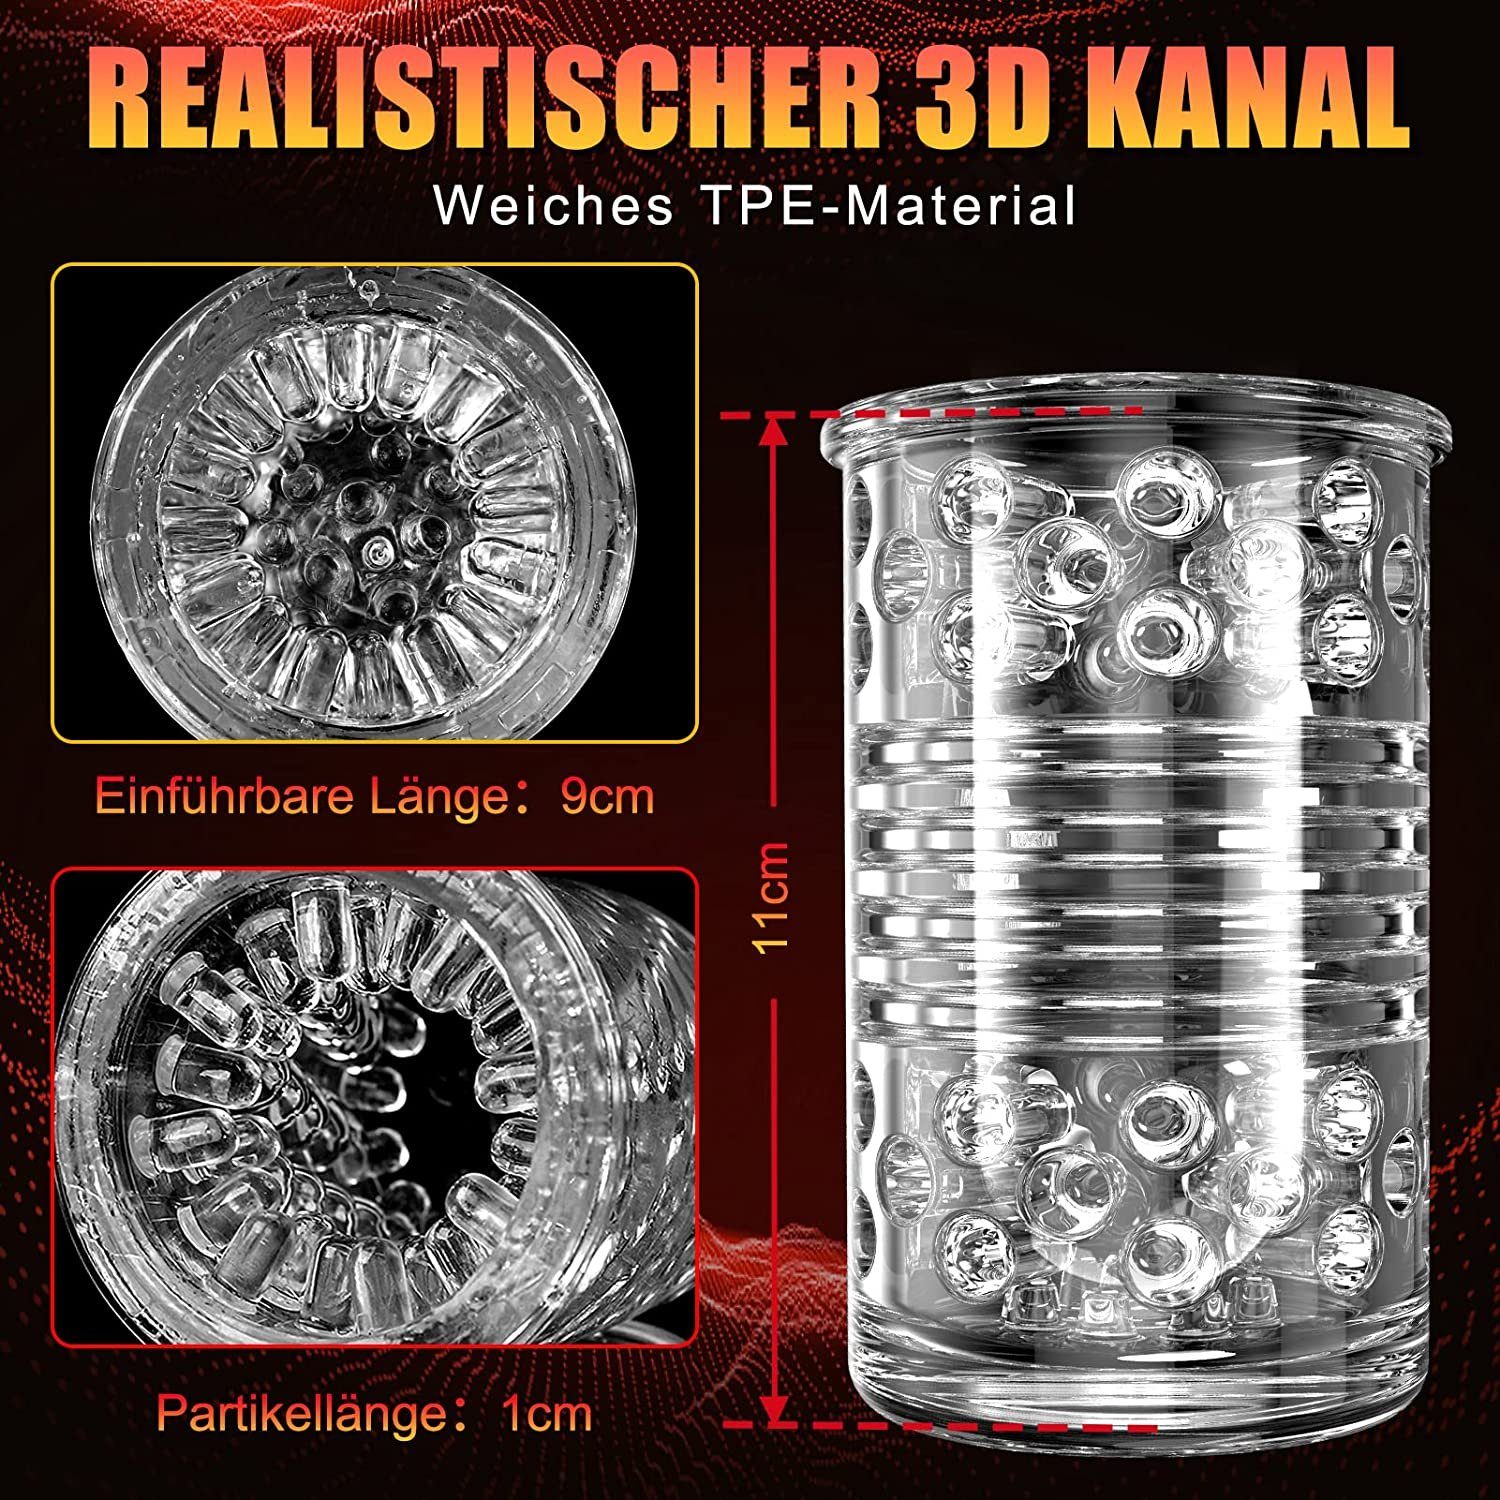 XDeer Masturbator Teleskopfunktion Drehfunktion, rot USB Masturbator wiederaufladbar und 3D-Kanal, mit Saugnäpfen,7Modi Ein-Knopf-Orgasmus-Design,Realistischer